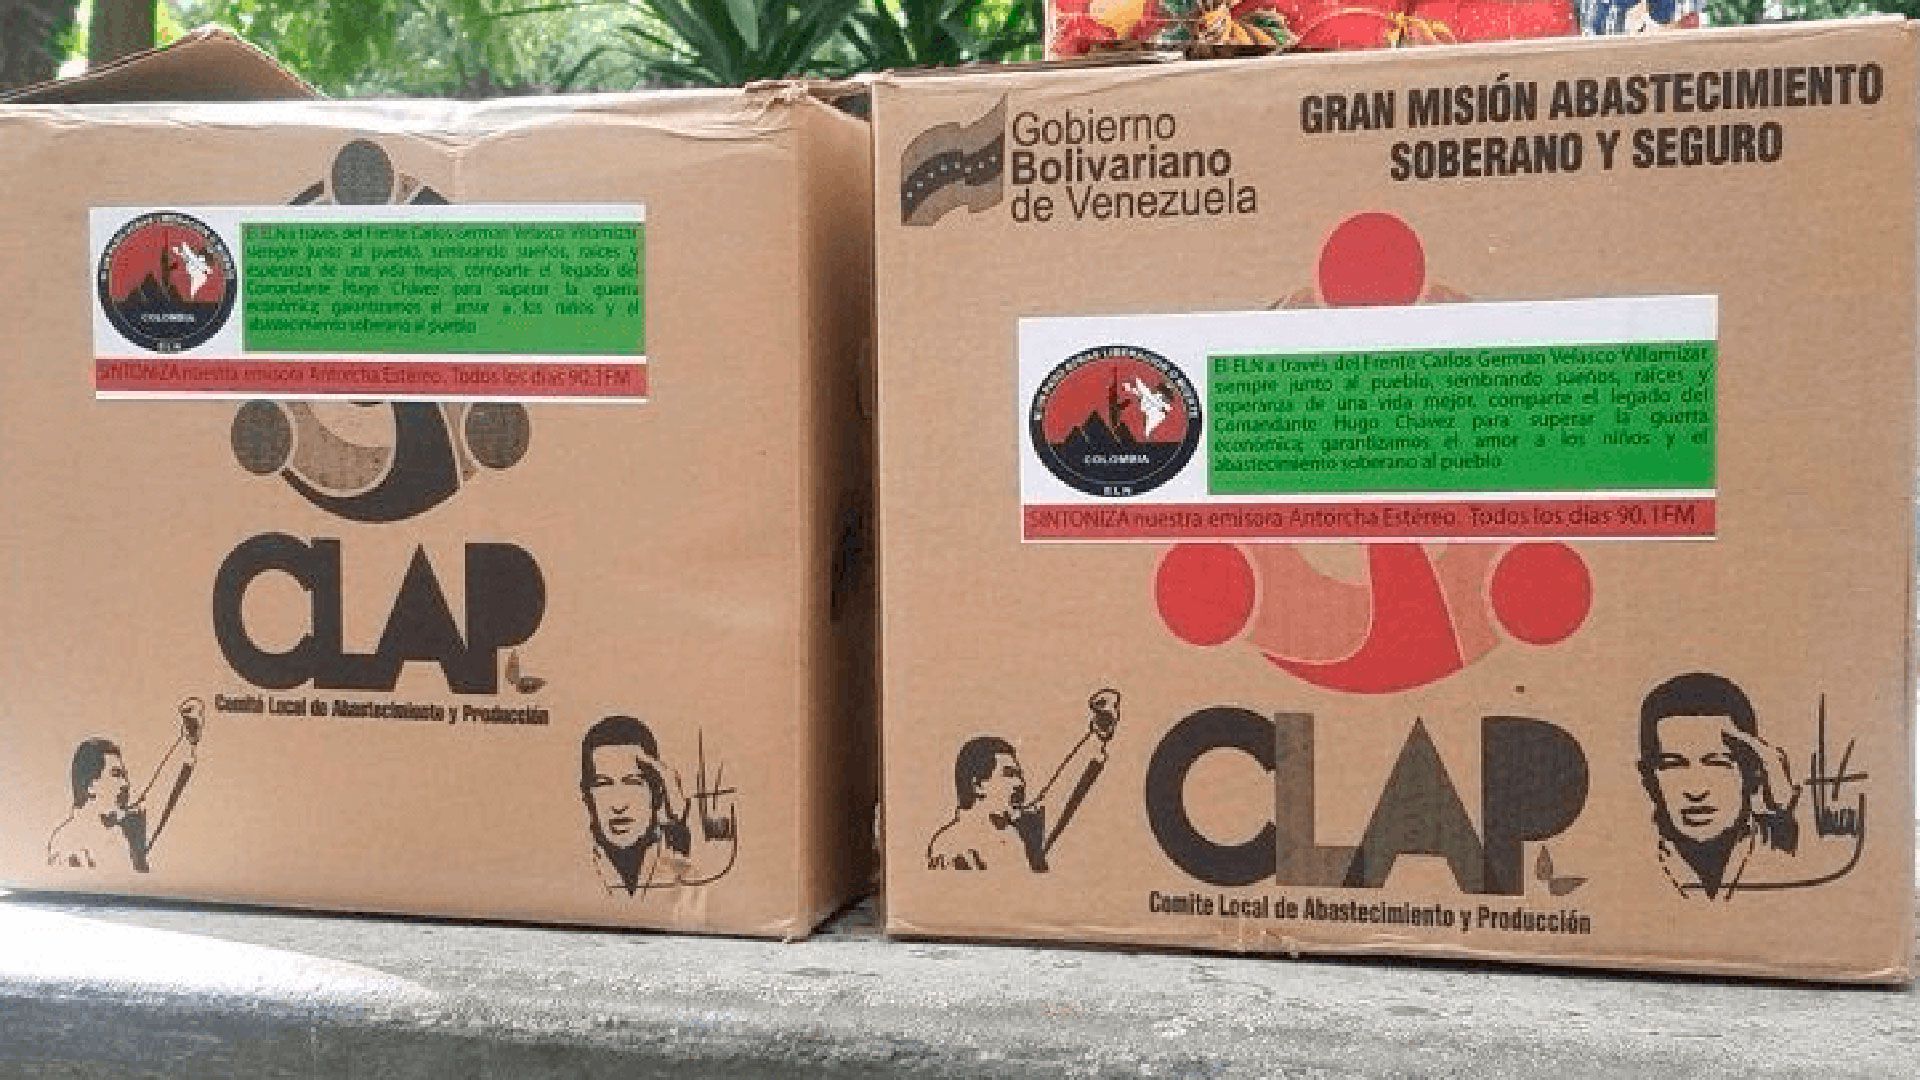 Cajas CLAP de alimentos que reparte el régimen de Maduro, co insignias y mensaje del ELM